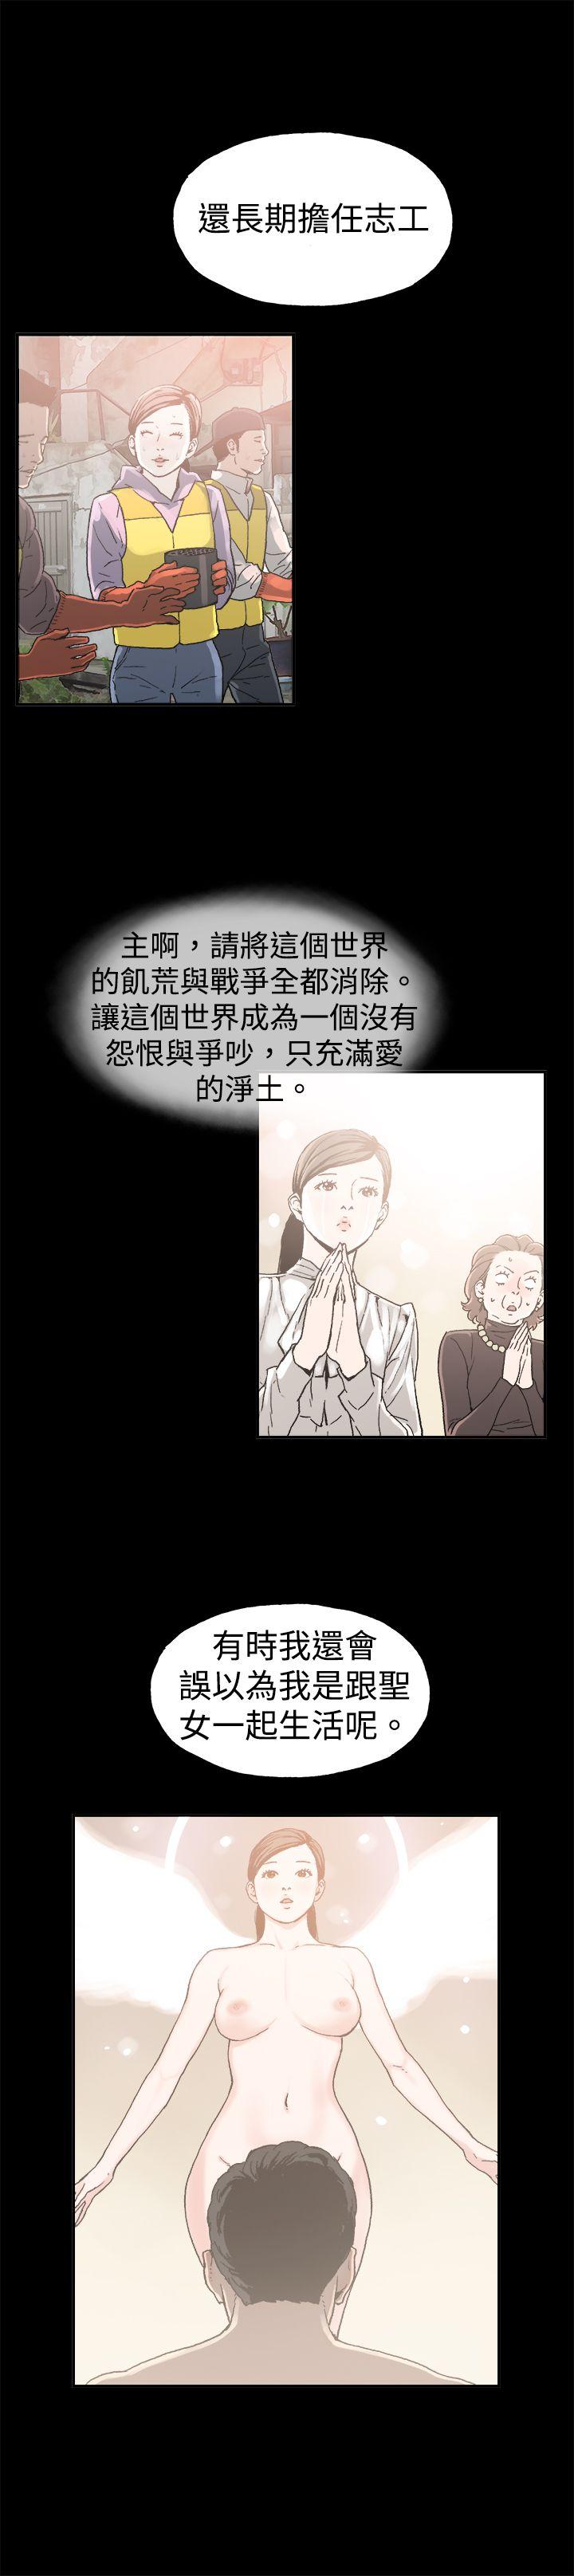 韩国污漫画 醜聞第二季 第9话贤淑的夫人 2